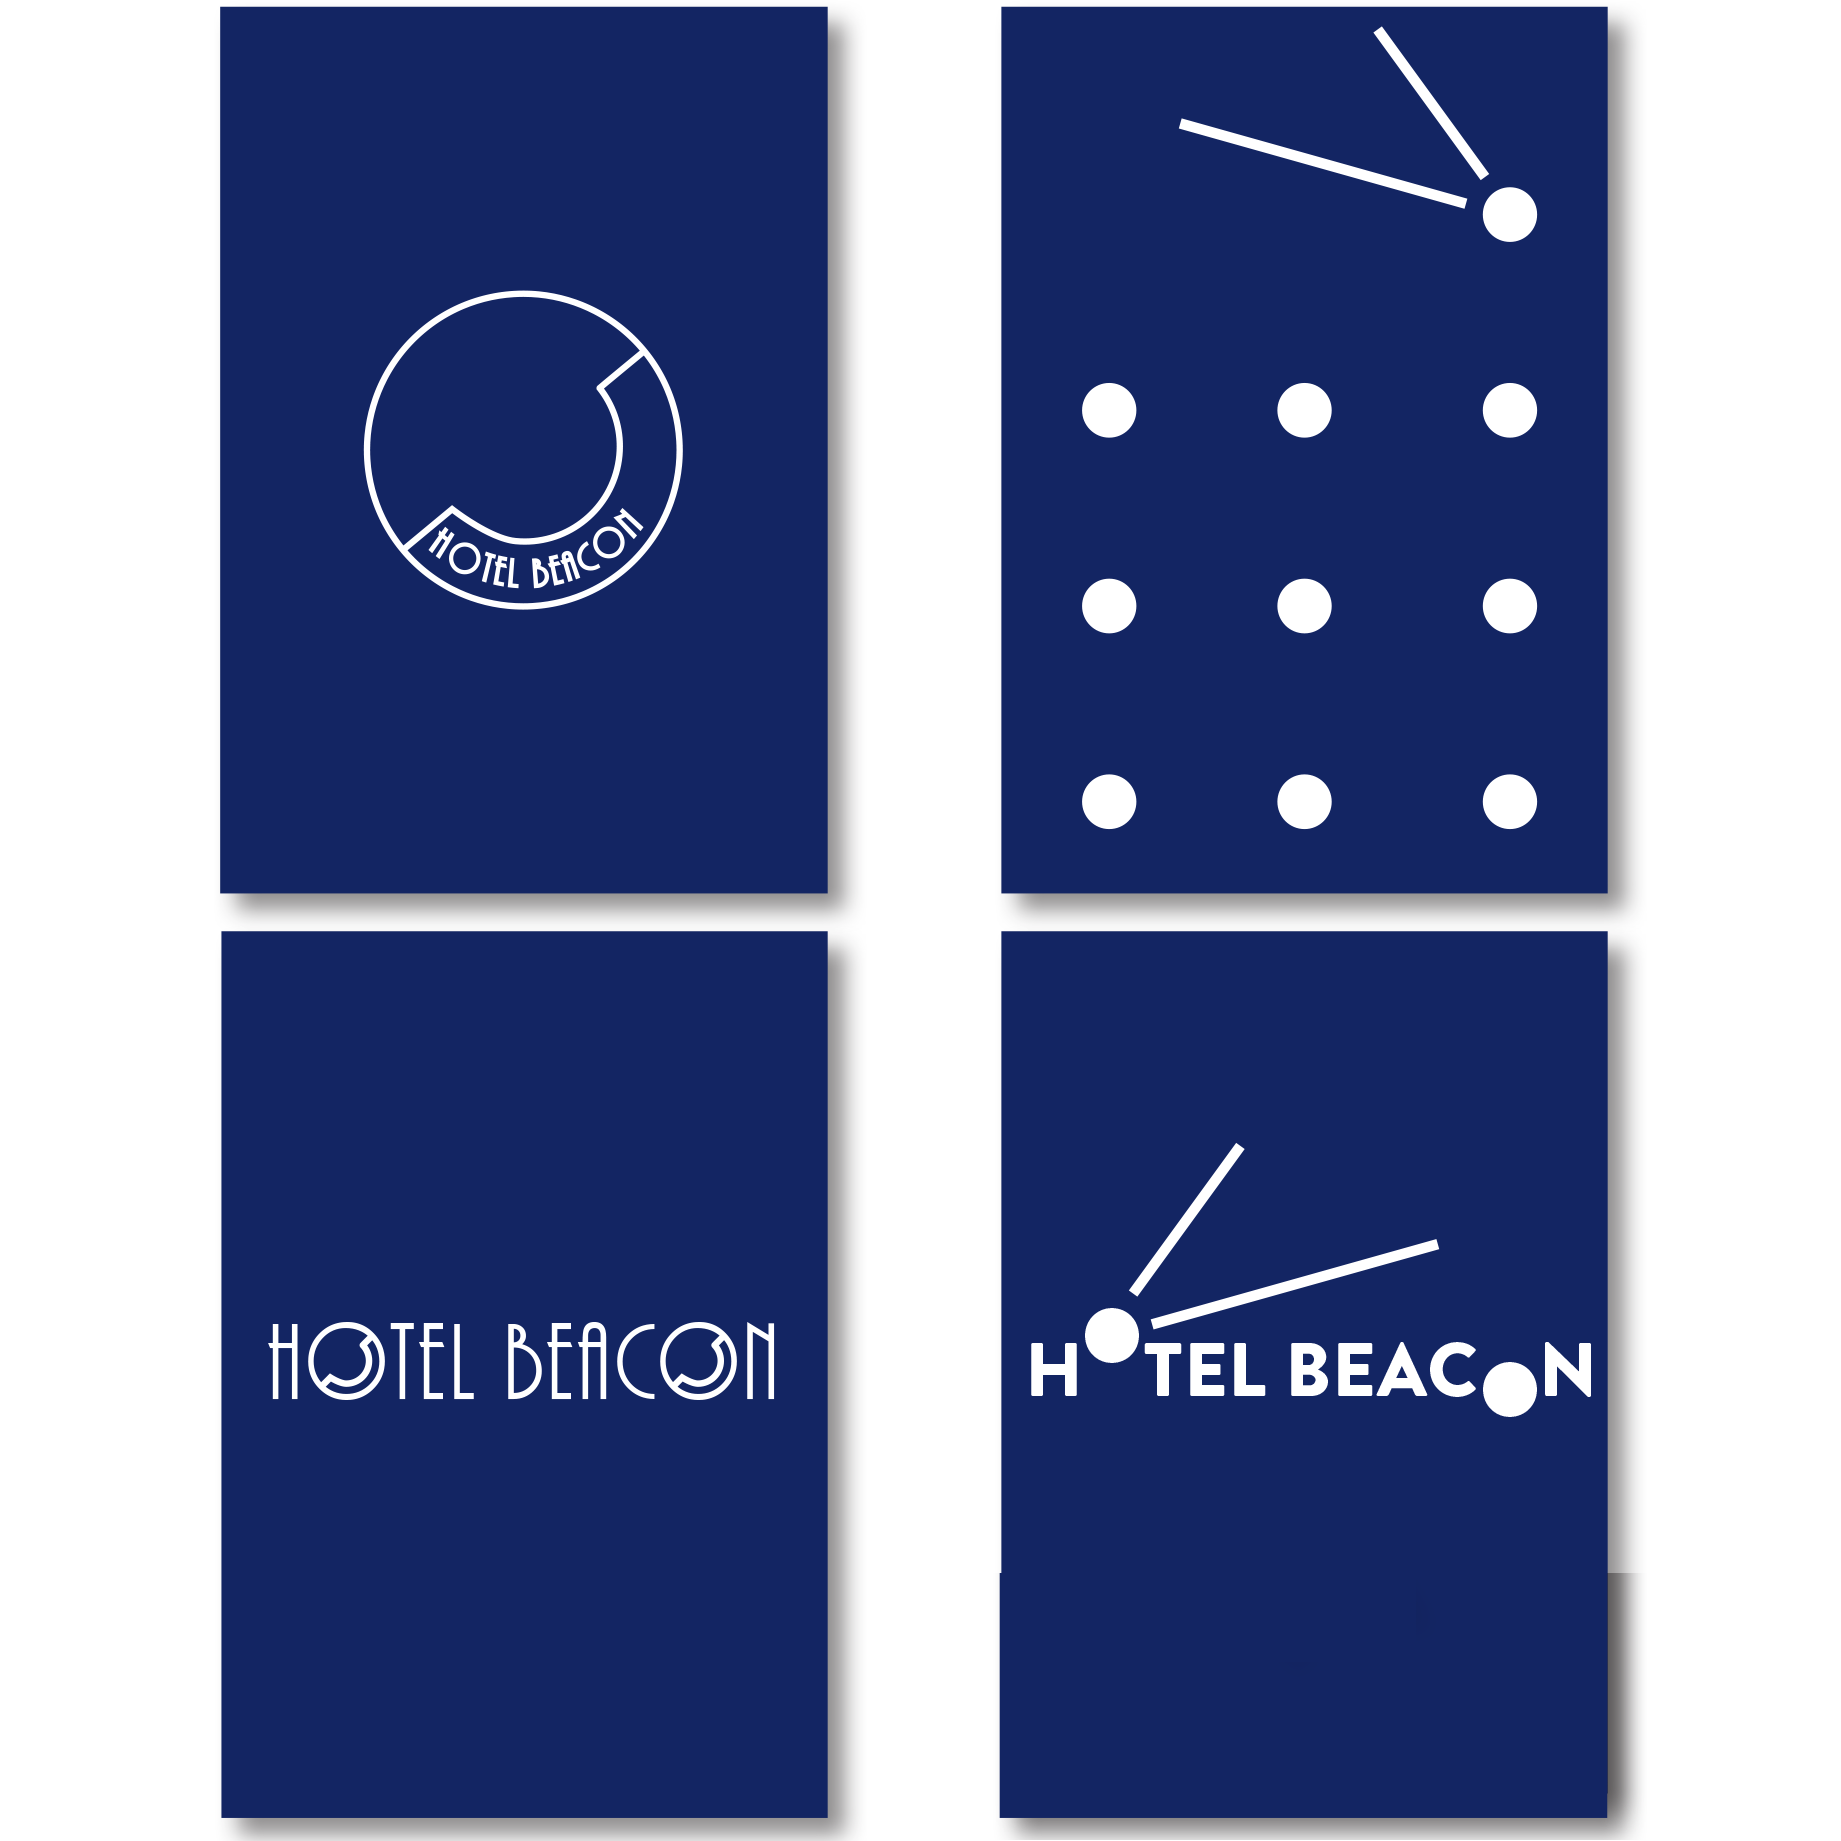 Beacon Hotel_logos02.png